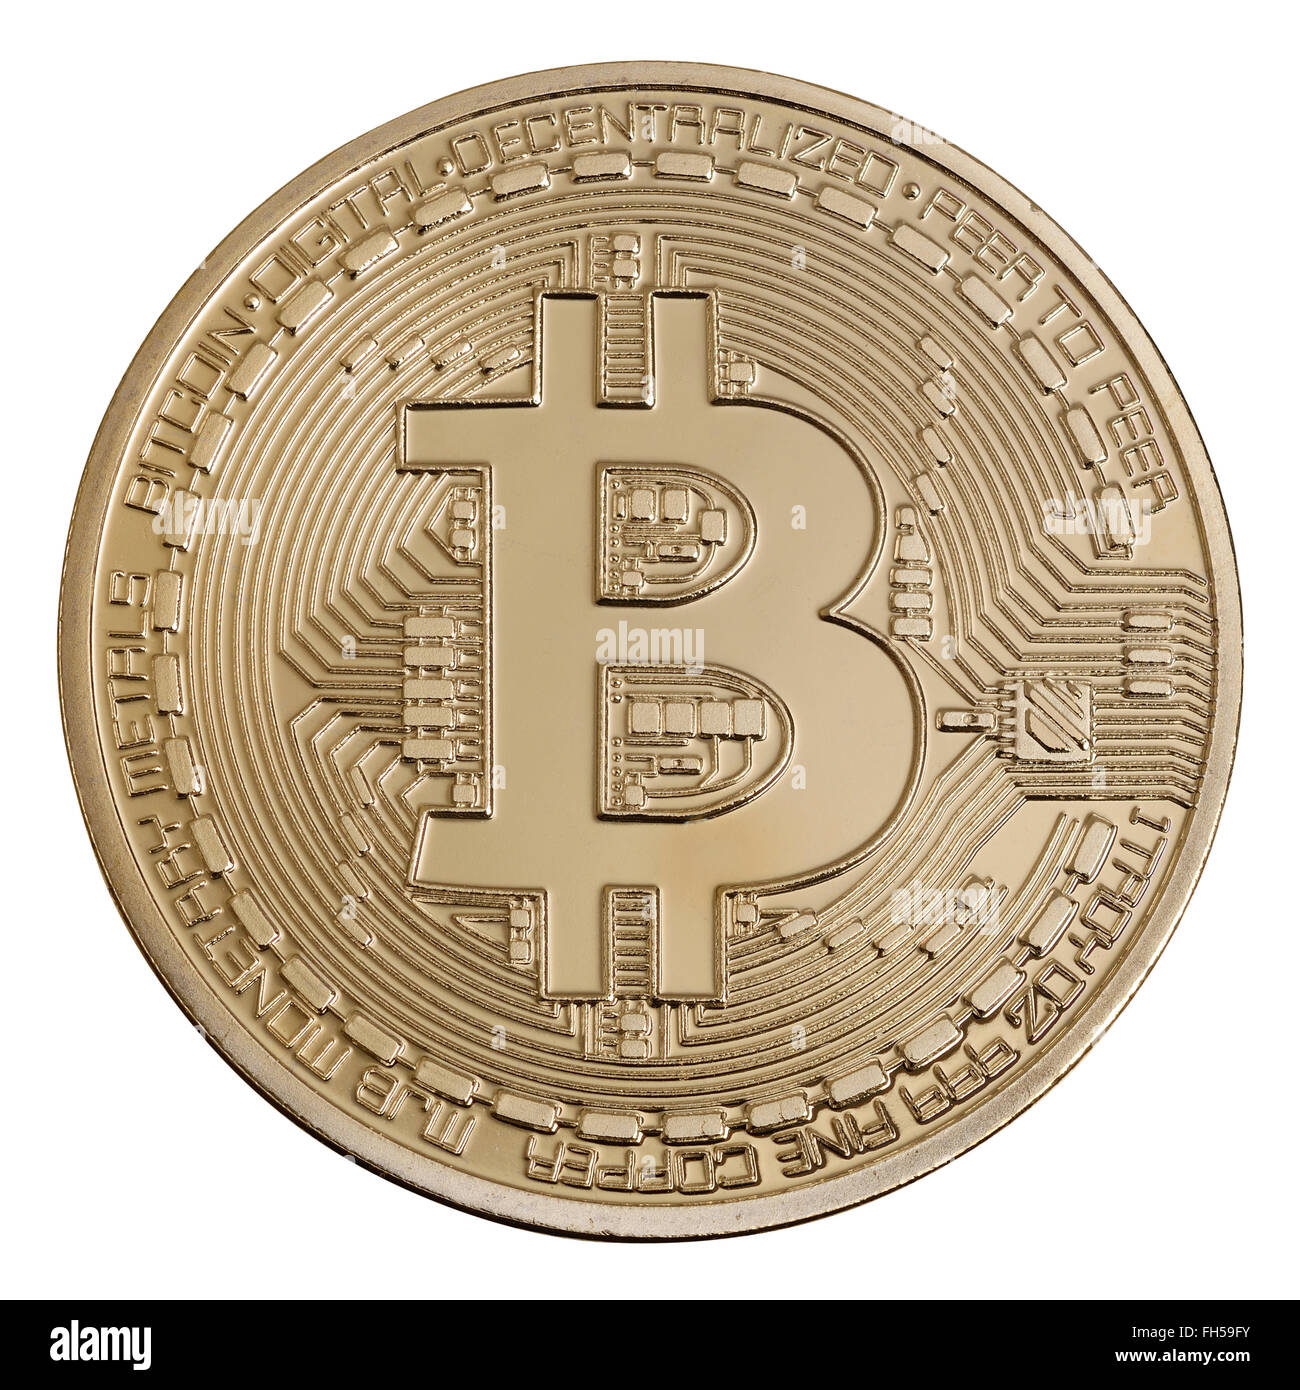 Gold coloured physical Bitcoin coin Stock Photo